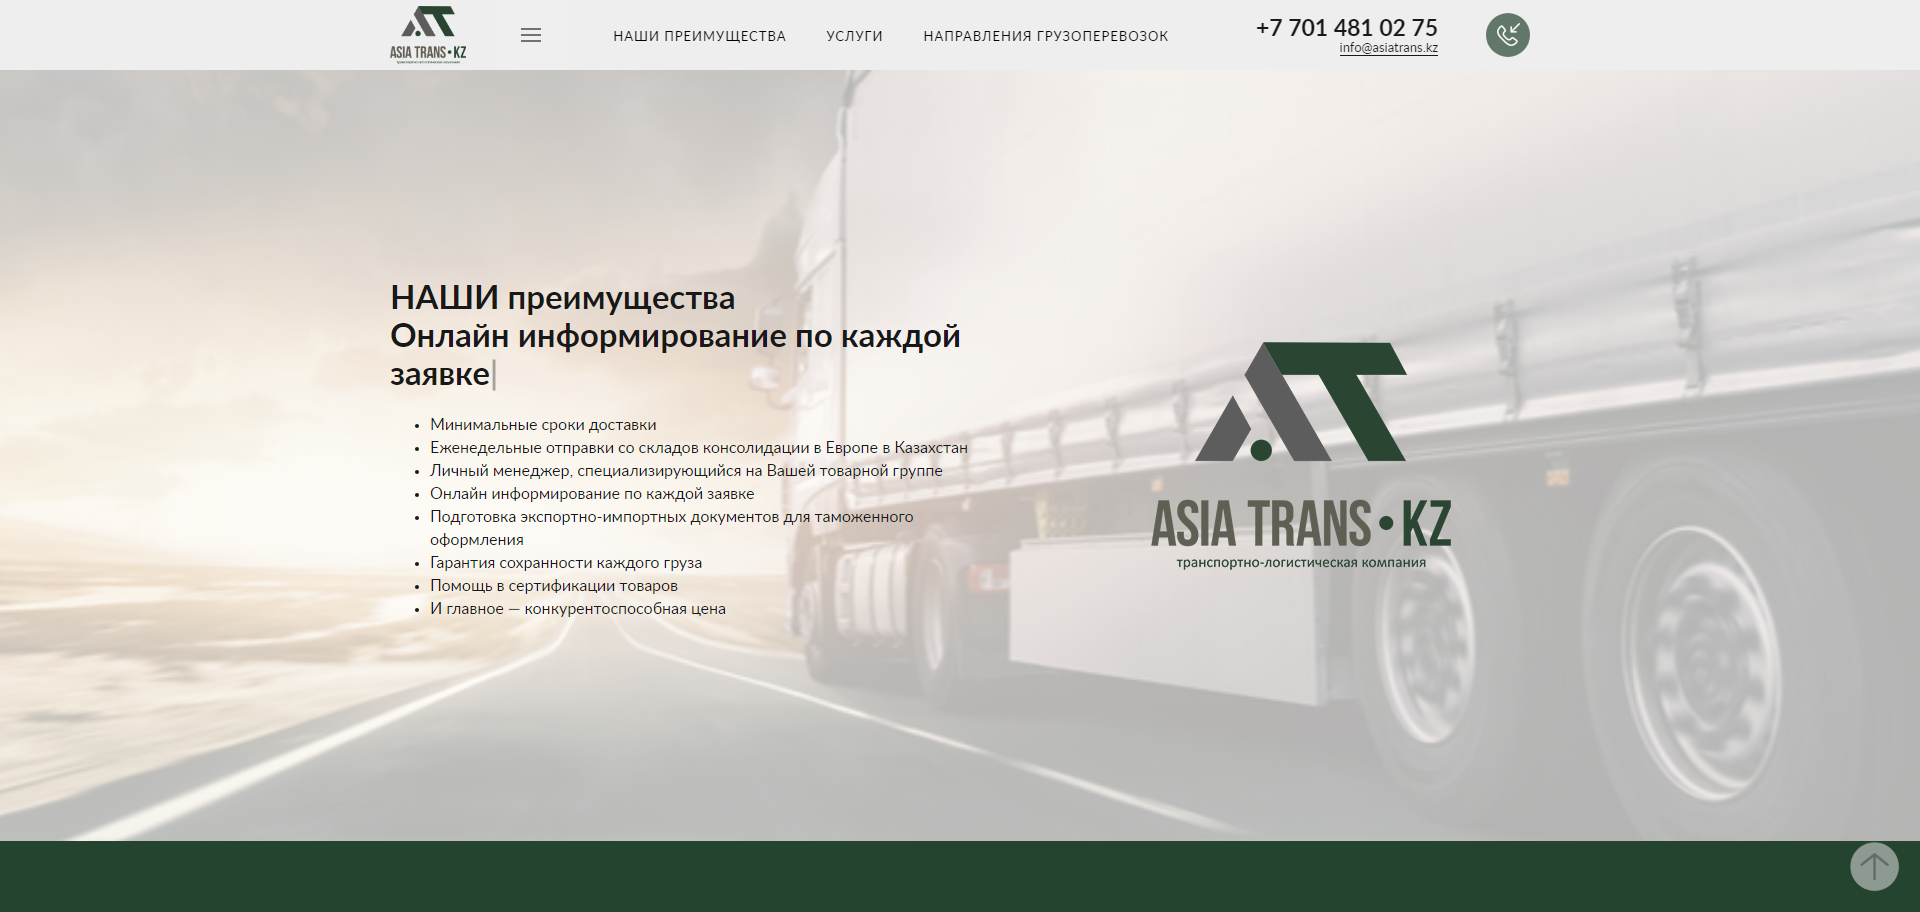 транспортно-логистическая компания тоо «asia trans kz»